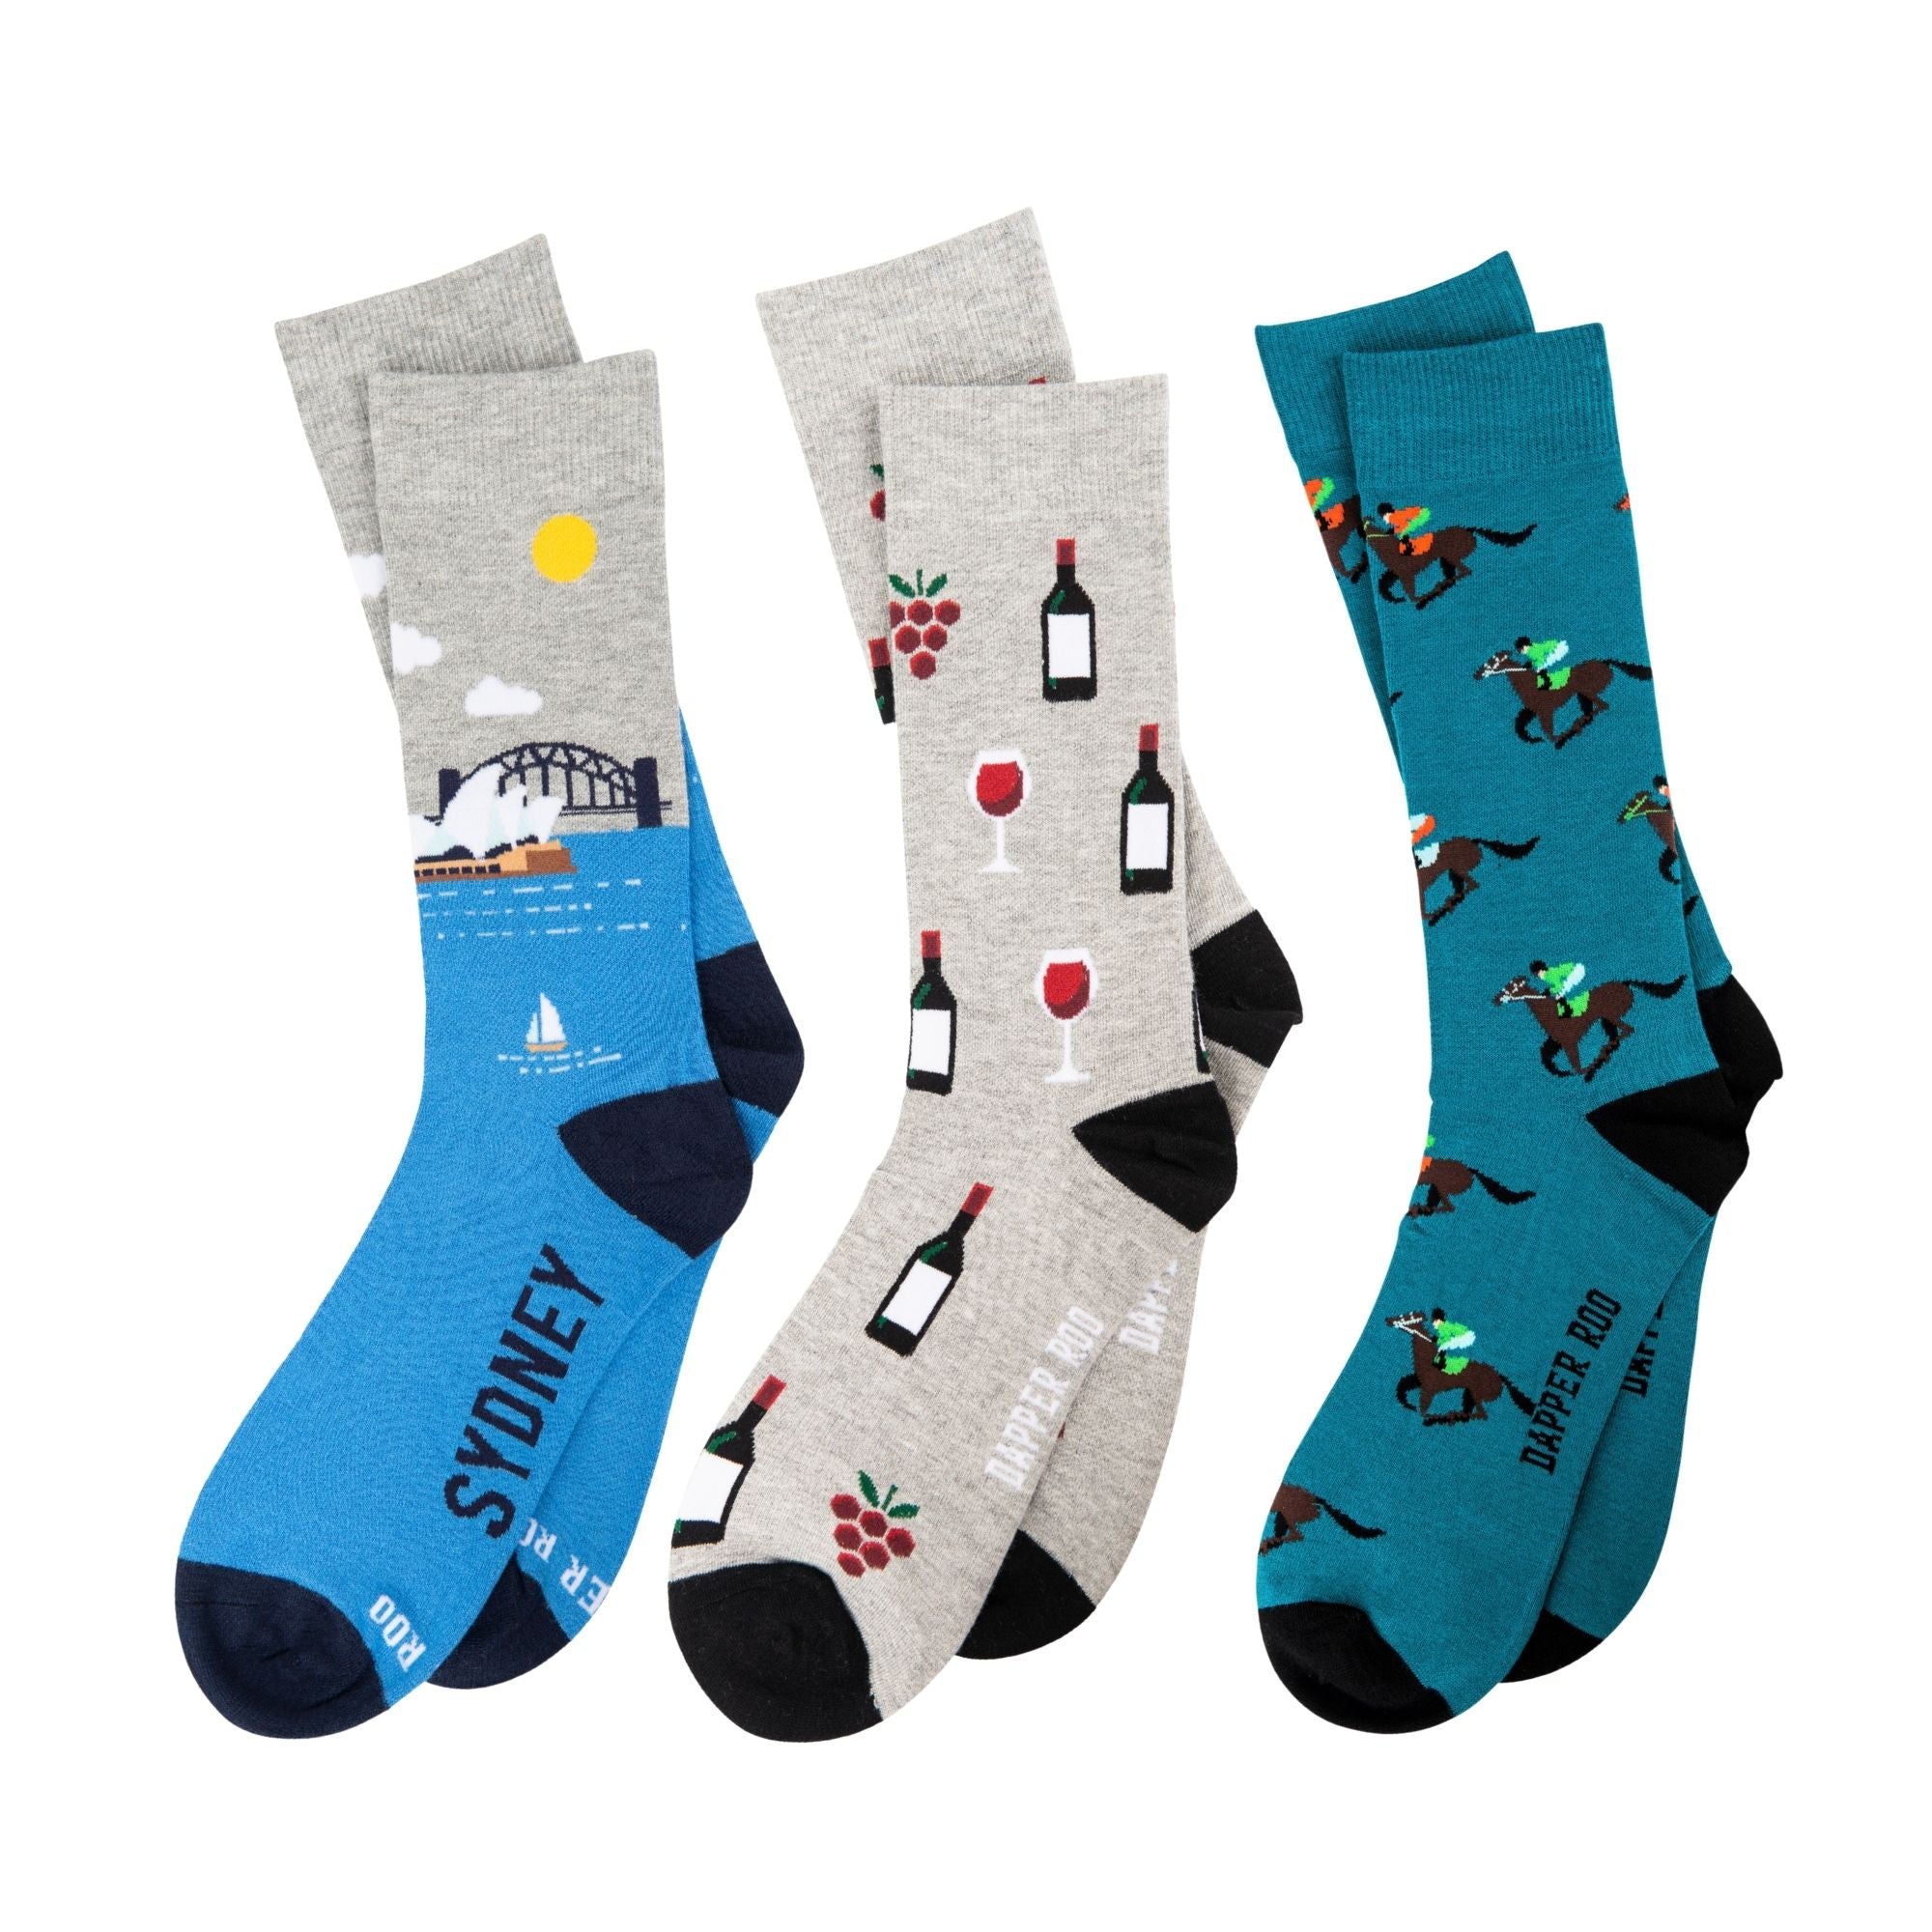 Sydney Socks Gift Set, Socks Gift Sets, Gift Sets, Socks, Location: SK2036+SK2017+SK2016, SS5012, Clinks.com